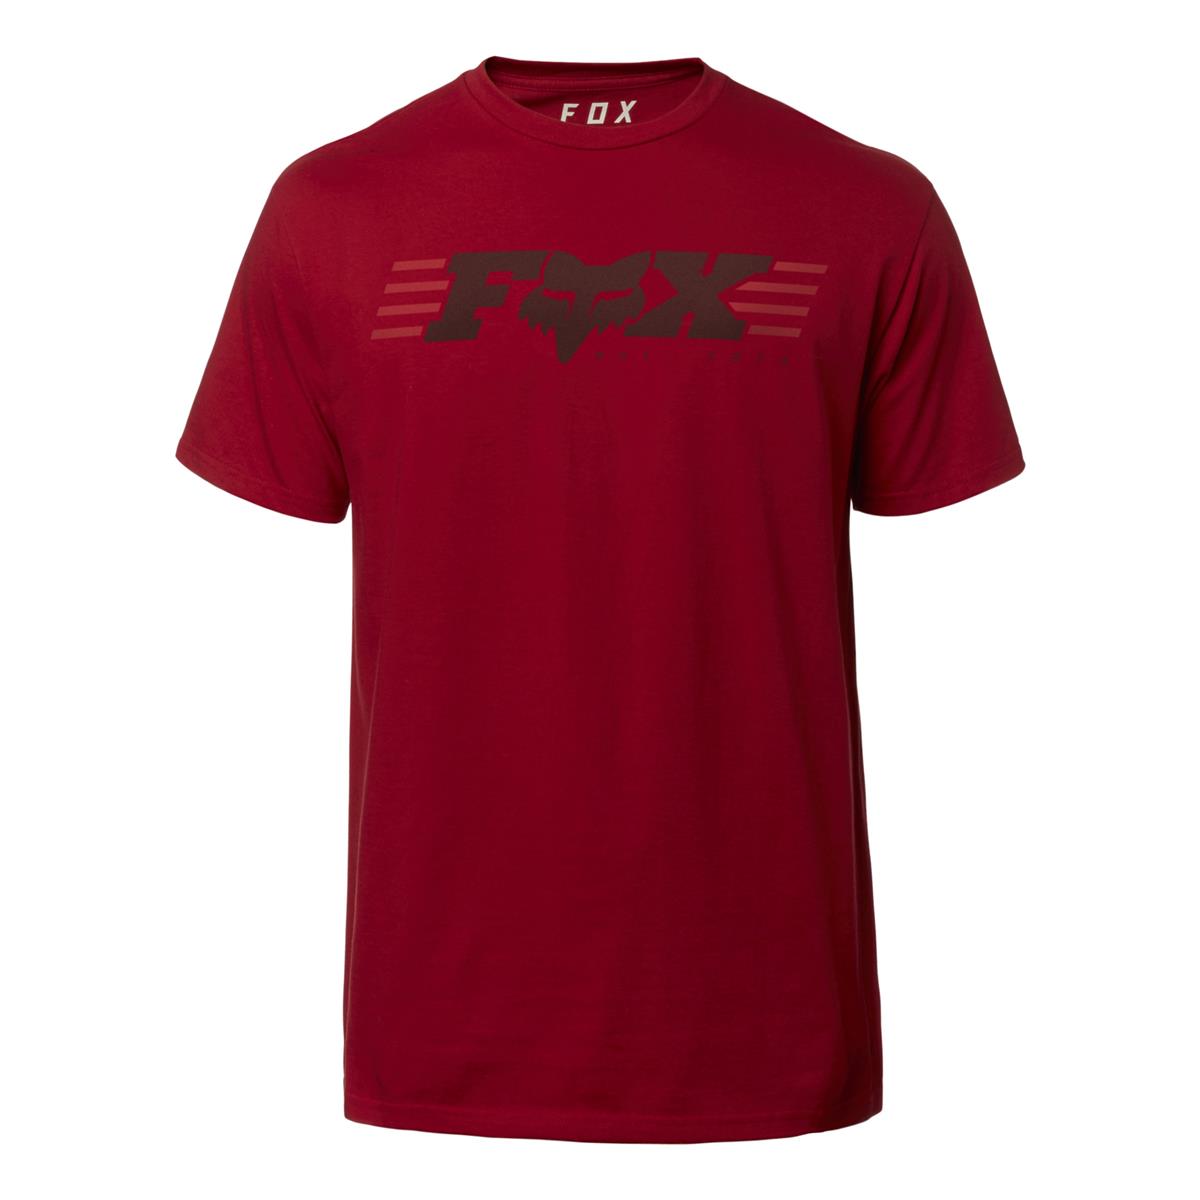 Fox T-Shirt Muffler Cardinal Red